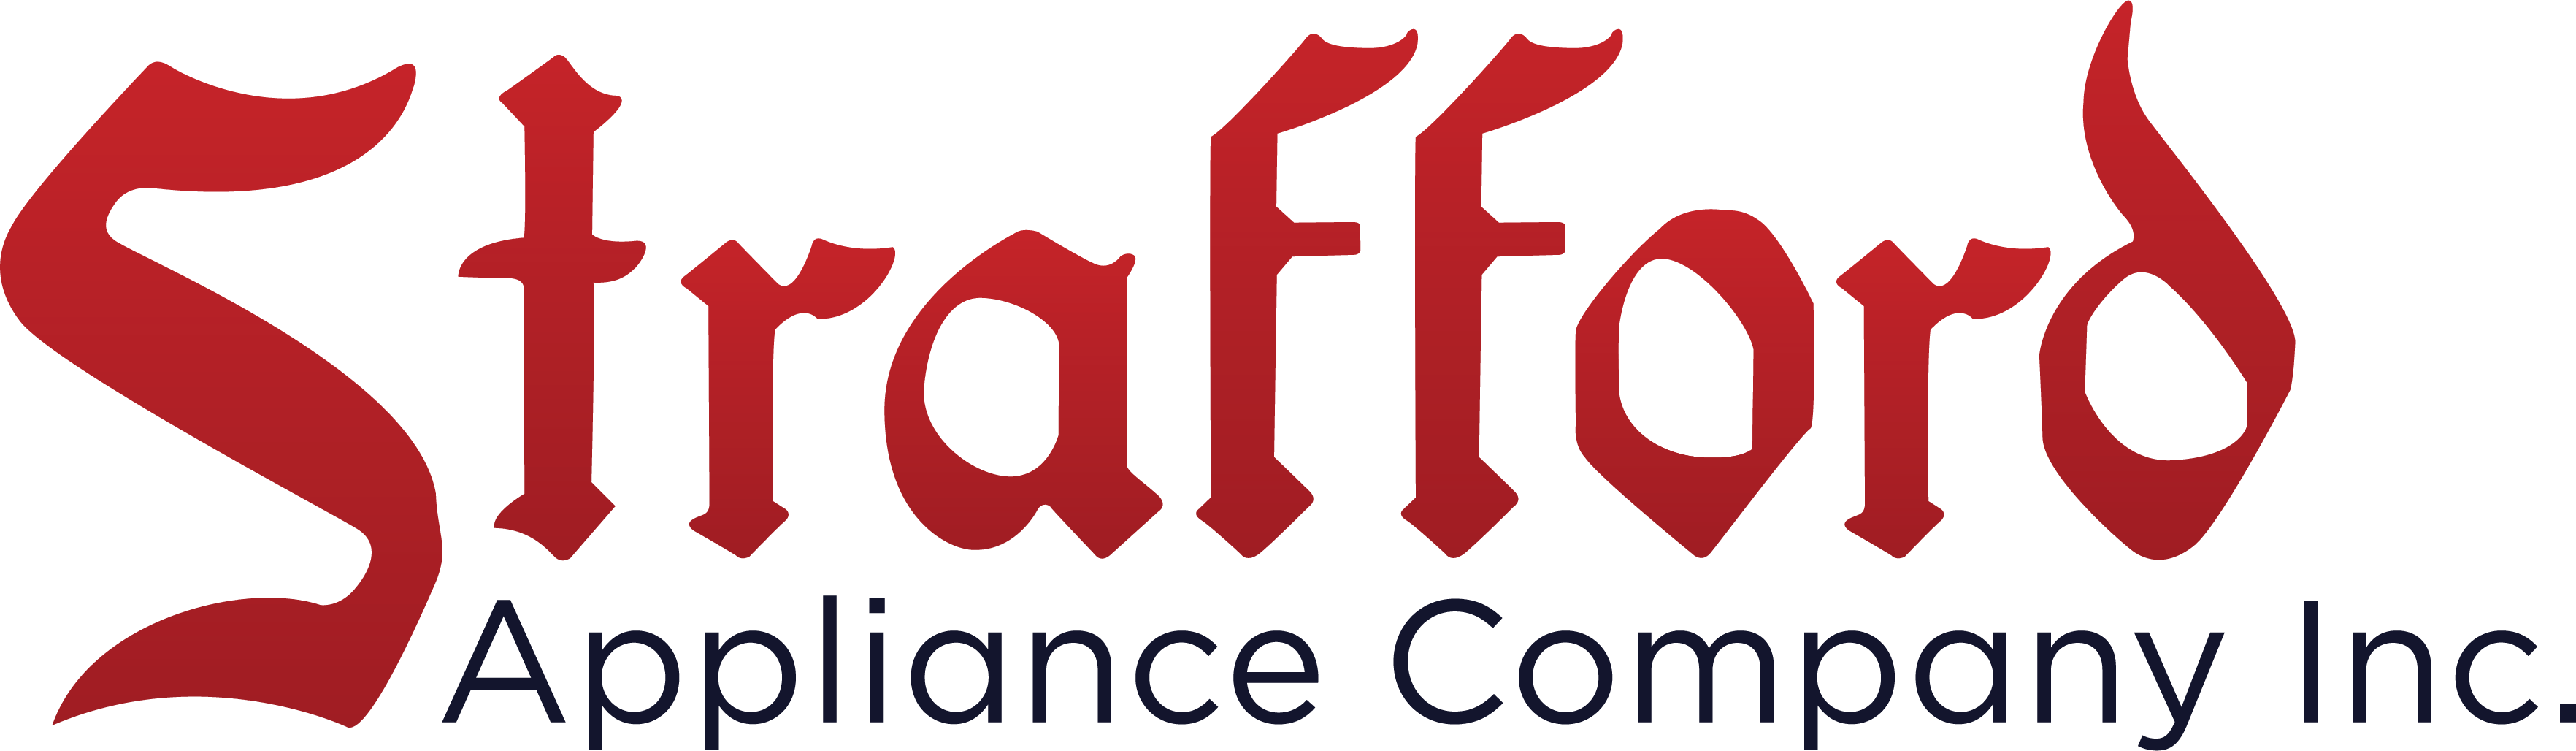 Strafford Appliance Company